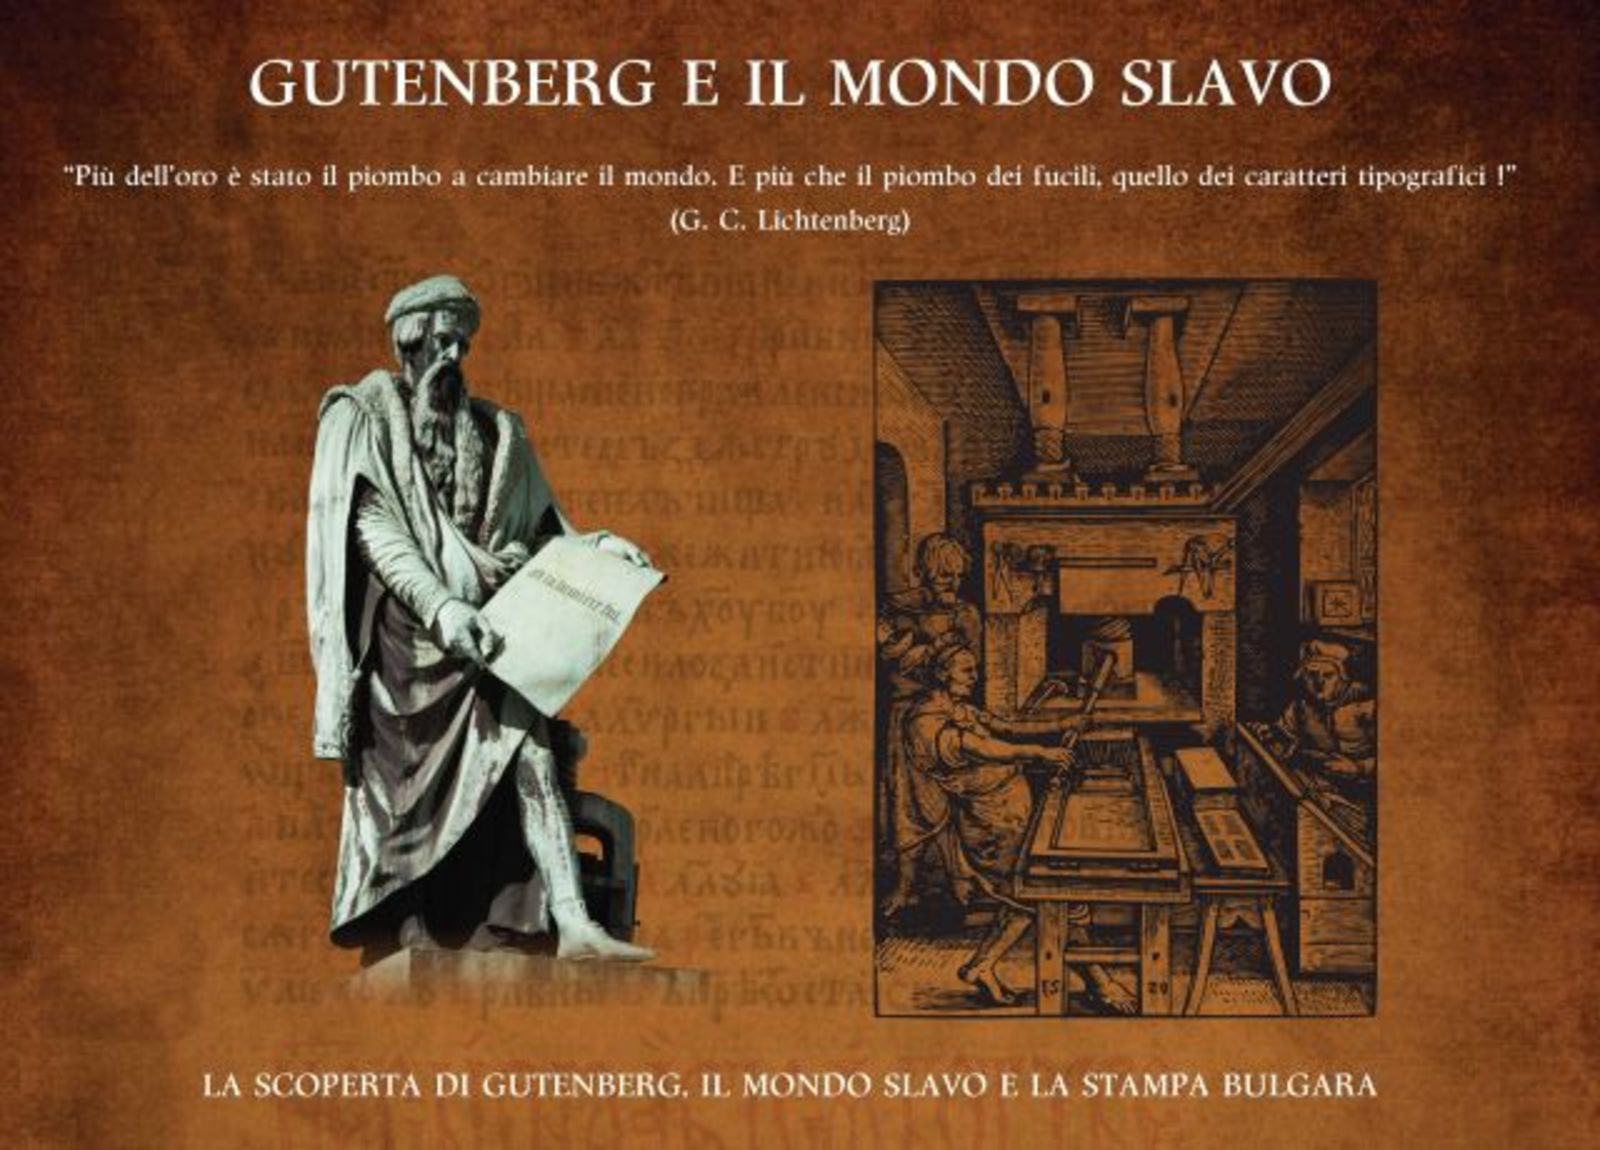 Представяне на изложбата „Гутенберг и славянският свят“ в Библиотека Амброзиана, Милано